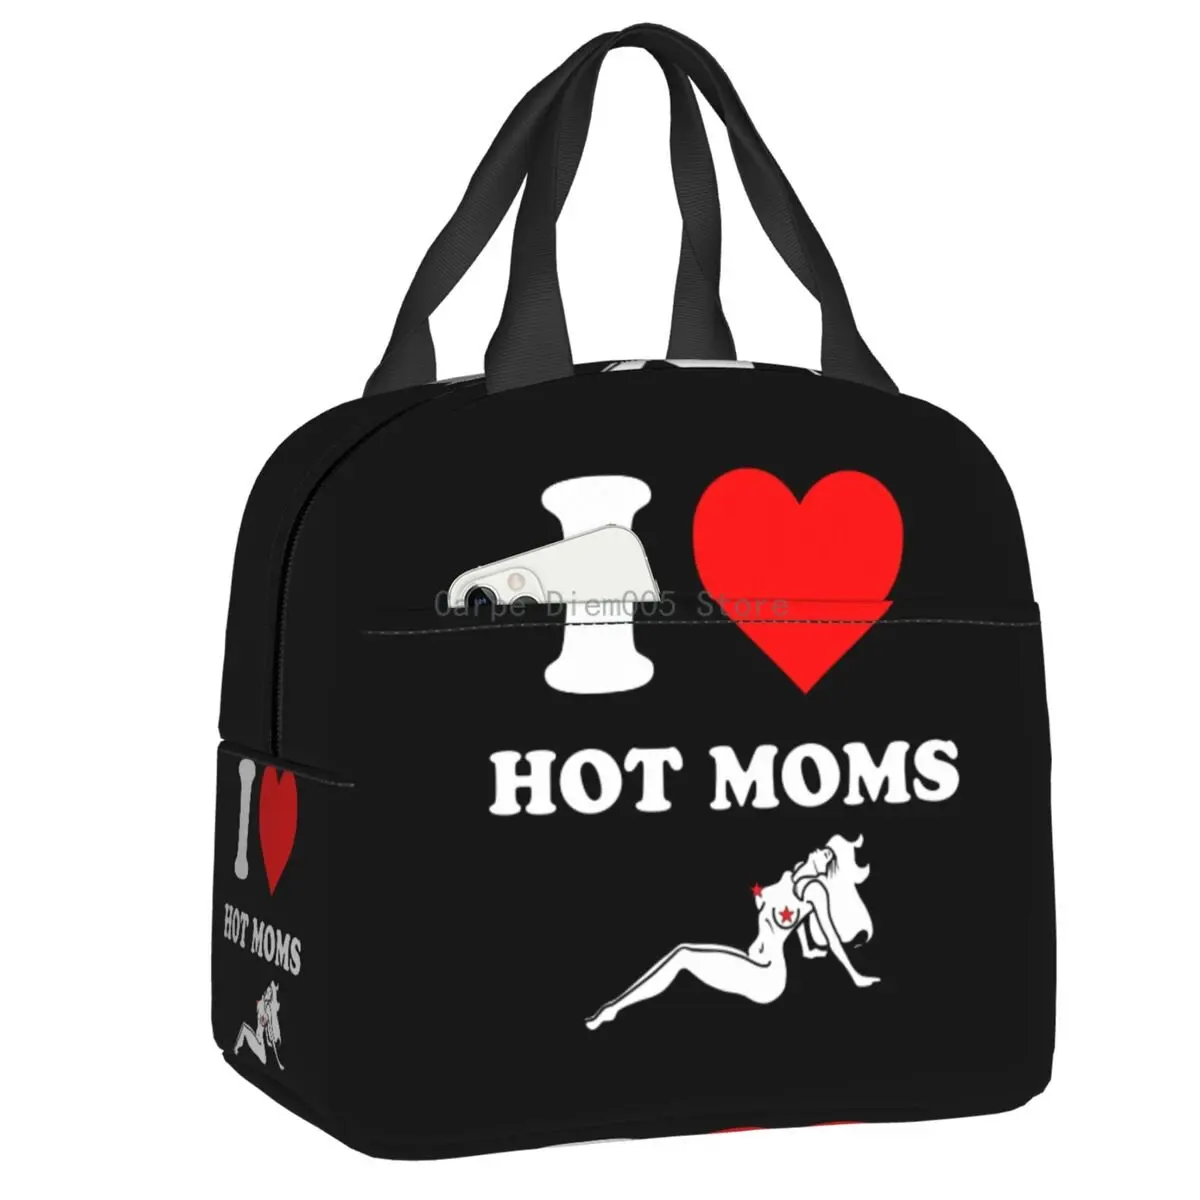 

Изолированная сумка-тоут для ланча для женщин и детей, переносной охладитель для горячих мам, Термальный Ланч-бокс, уличный пищевой контейн...